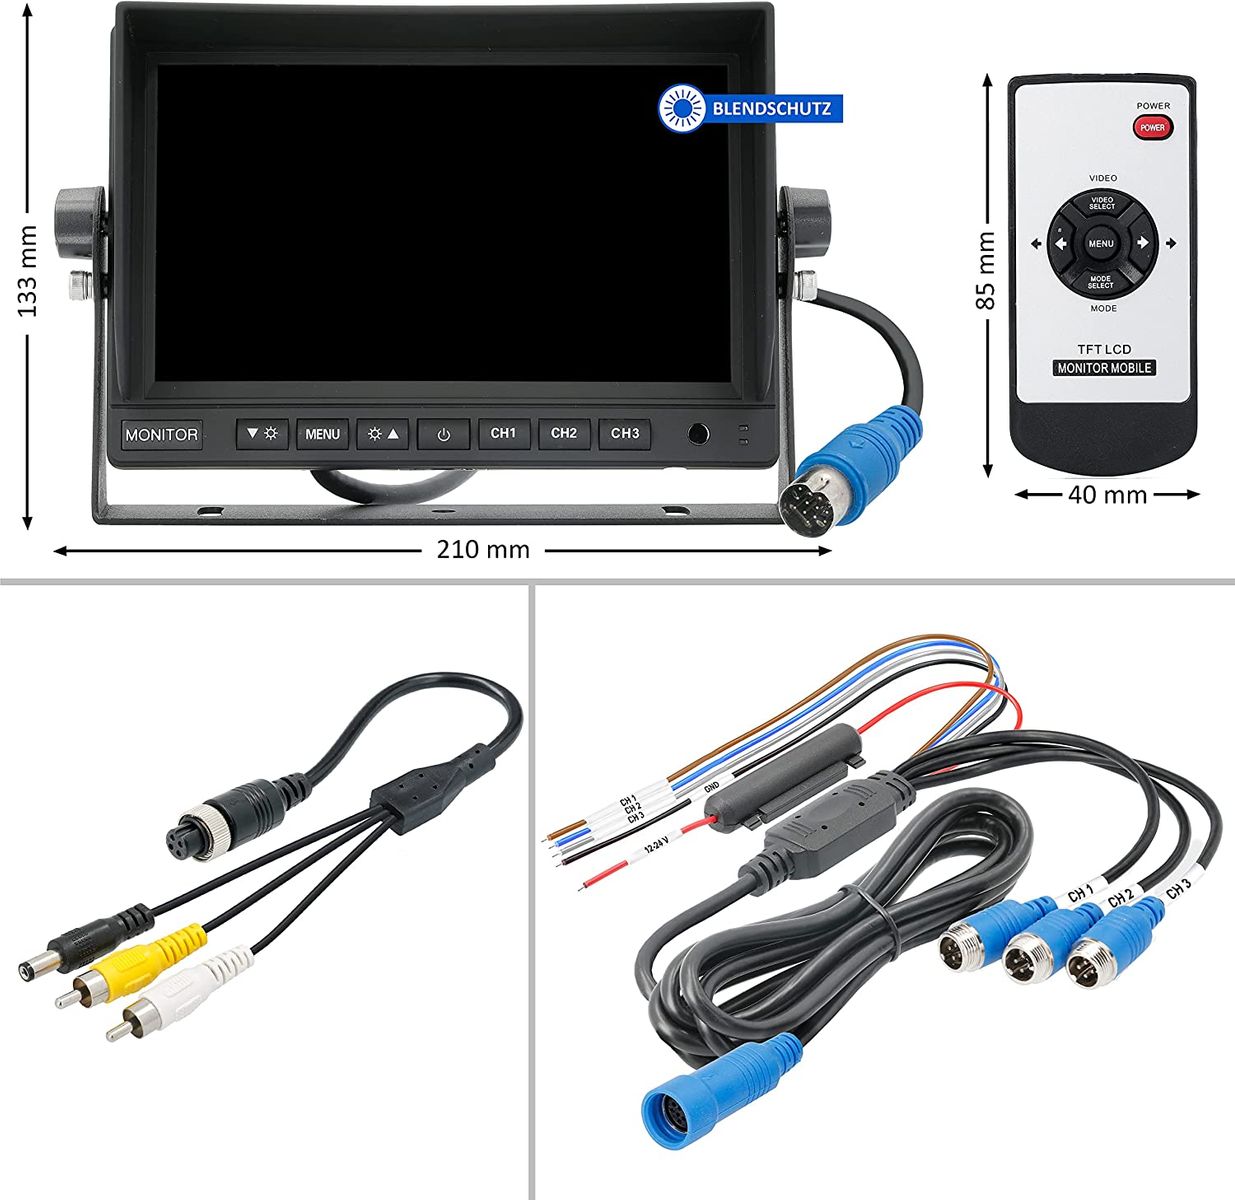 VSG 13163 – 7 1080P-HD LKW Rückfahrmonitor, Heavy Duty, Monitor inkl. Adapterkabel, e-Zulassung, Nachtsicht, 3 x AV IN, 12-24 V 22A. 7 1080P-HD Rückfahrmonitor